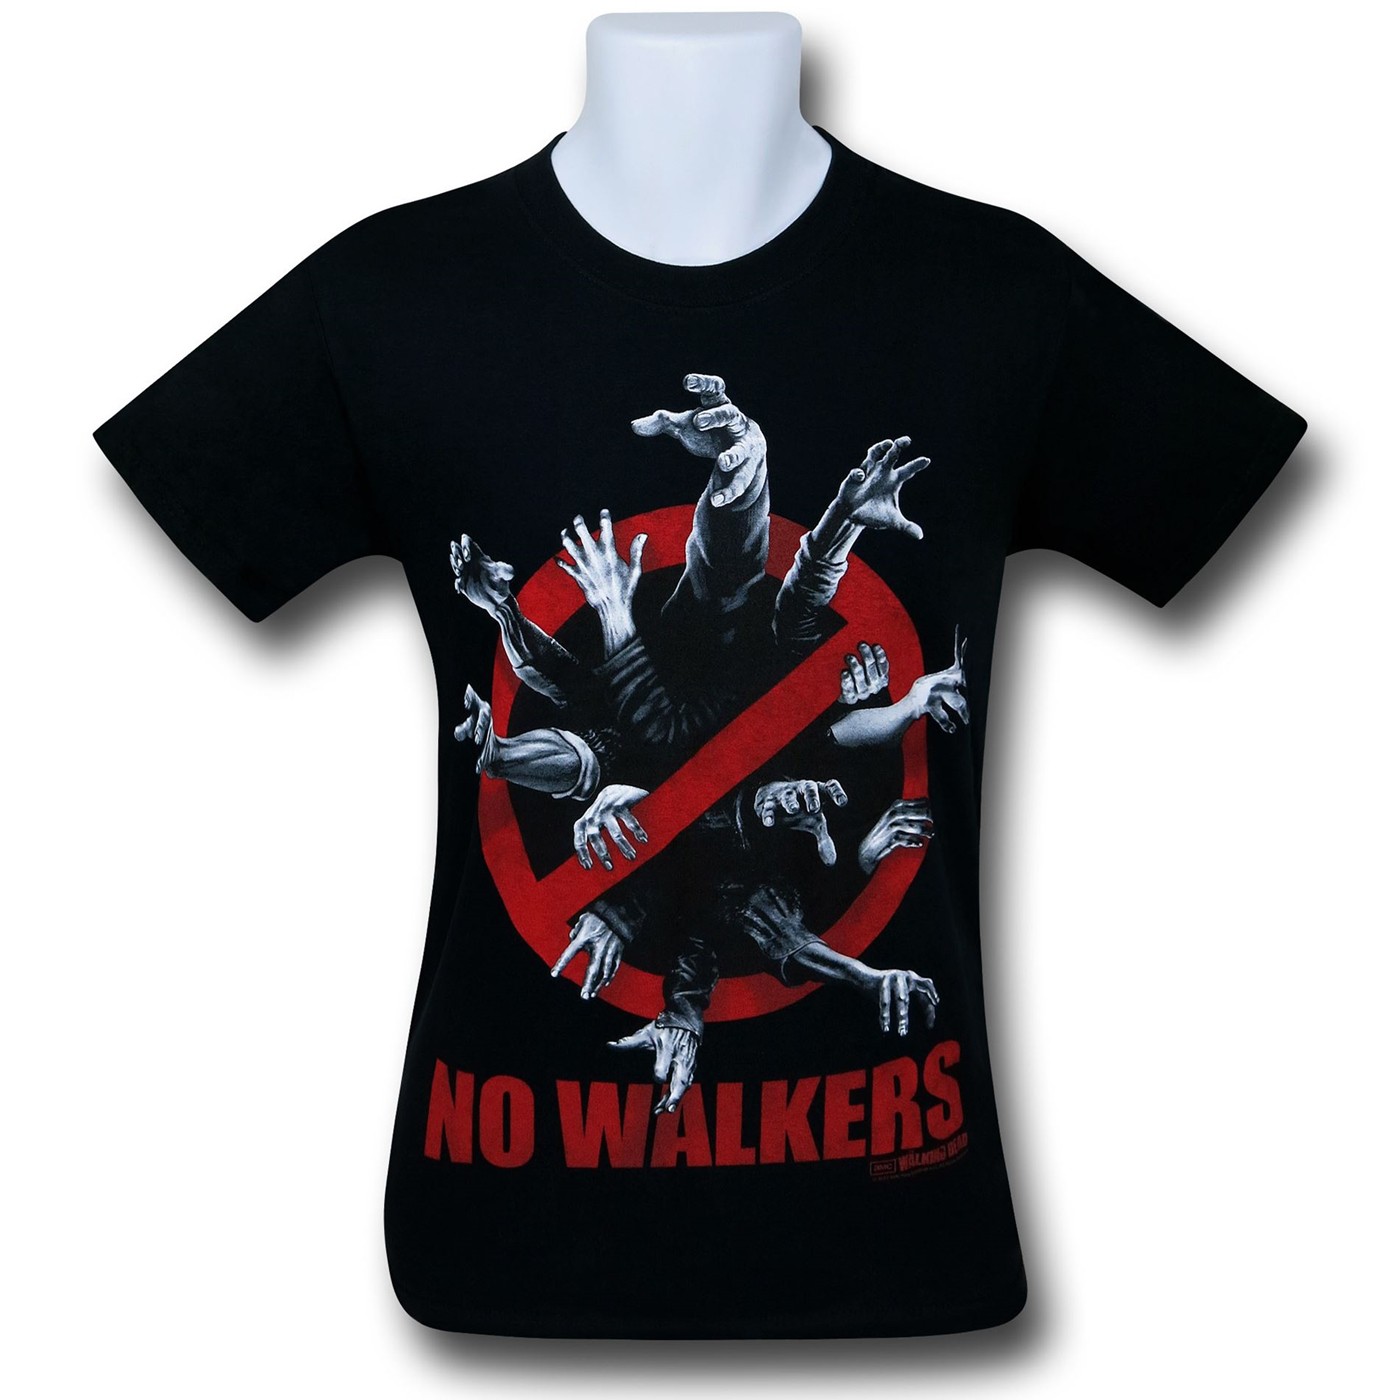 Walking Dead No Walkers T-Shirt